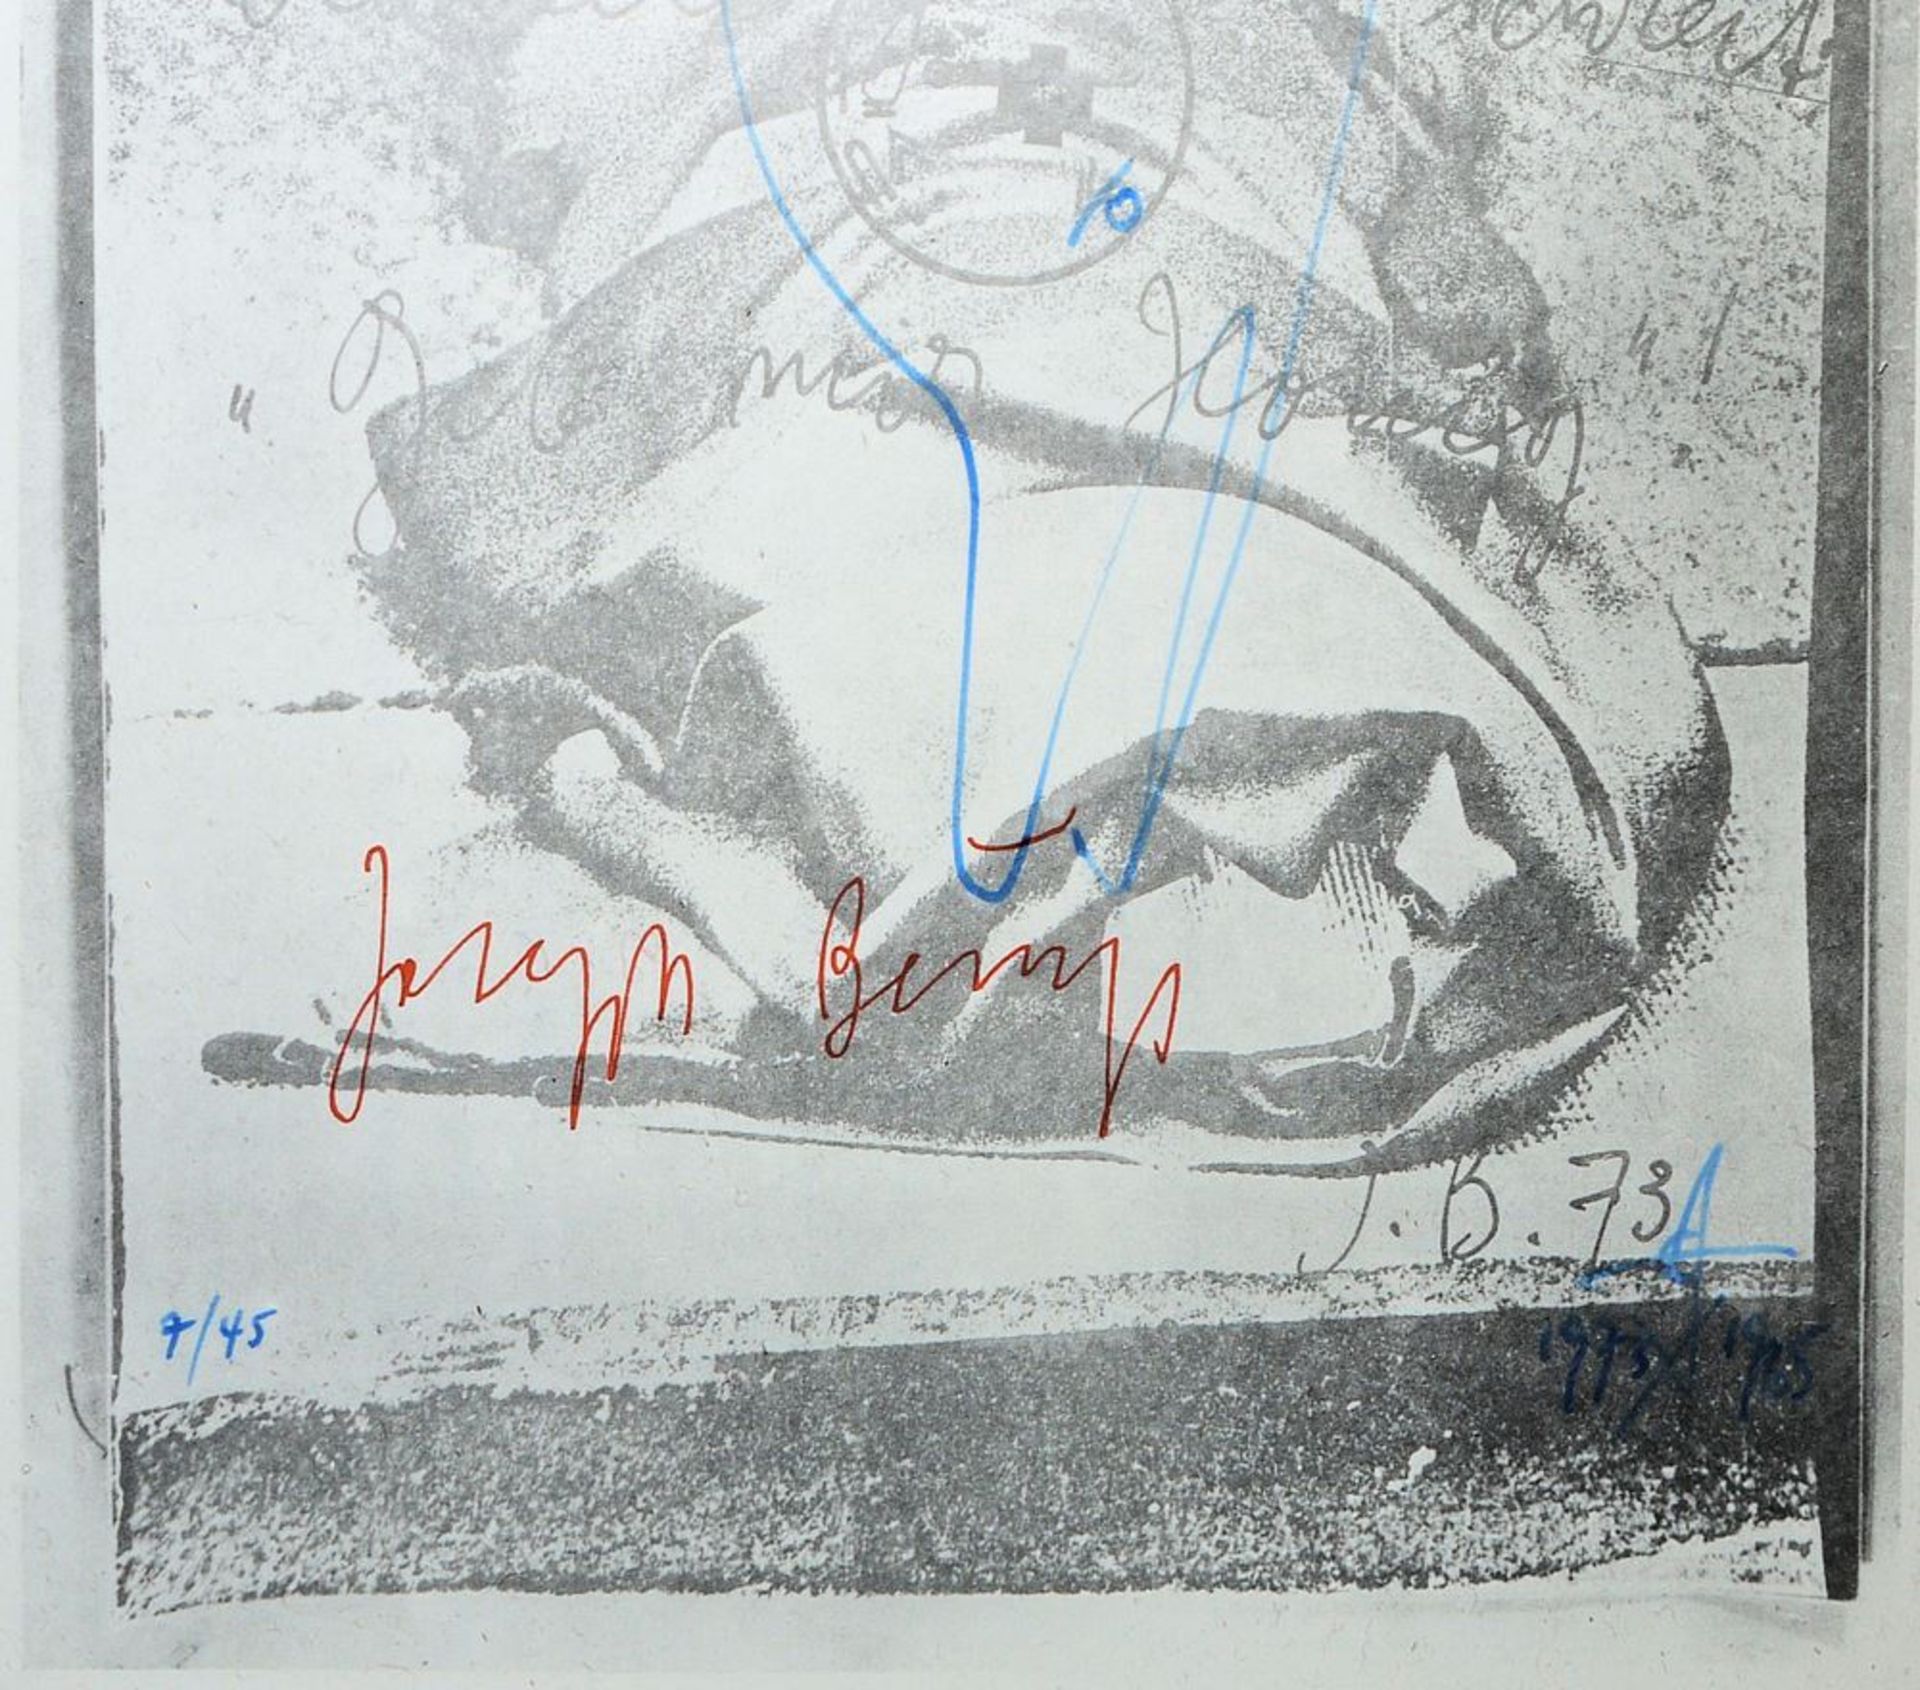 Joseph Beuys, Der Vogel, signierte Offsetlithographie mit Vogelzeichnung von Jonas Hafner, 1973/ - Image 2 of 2